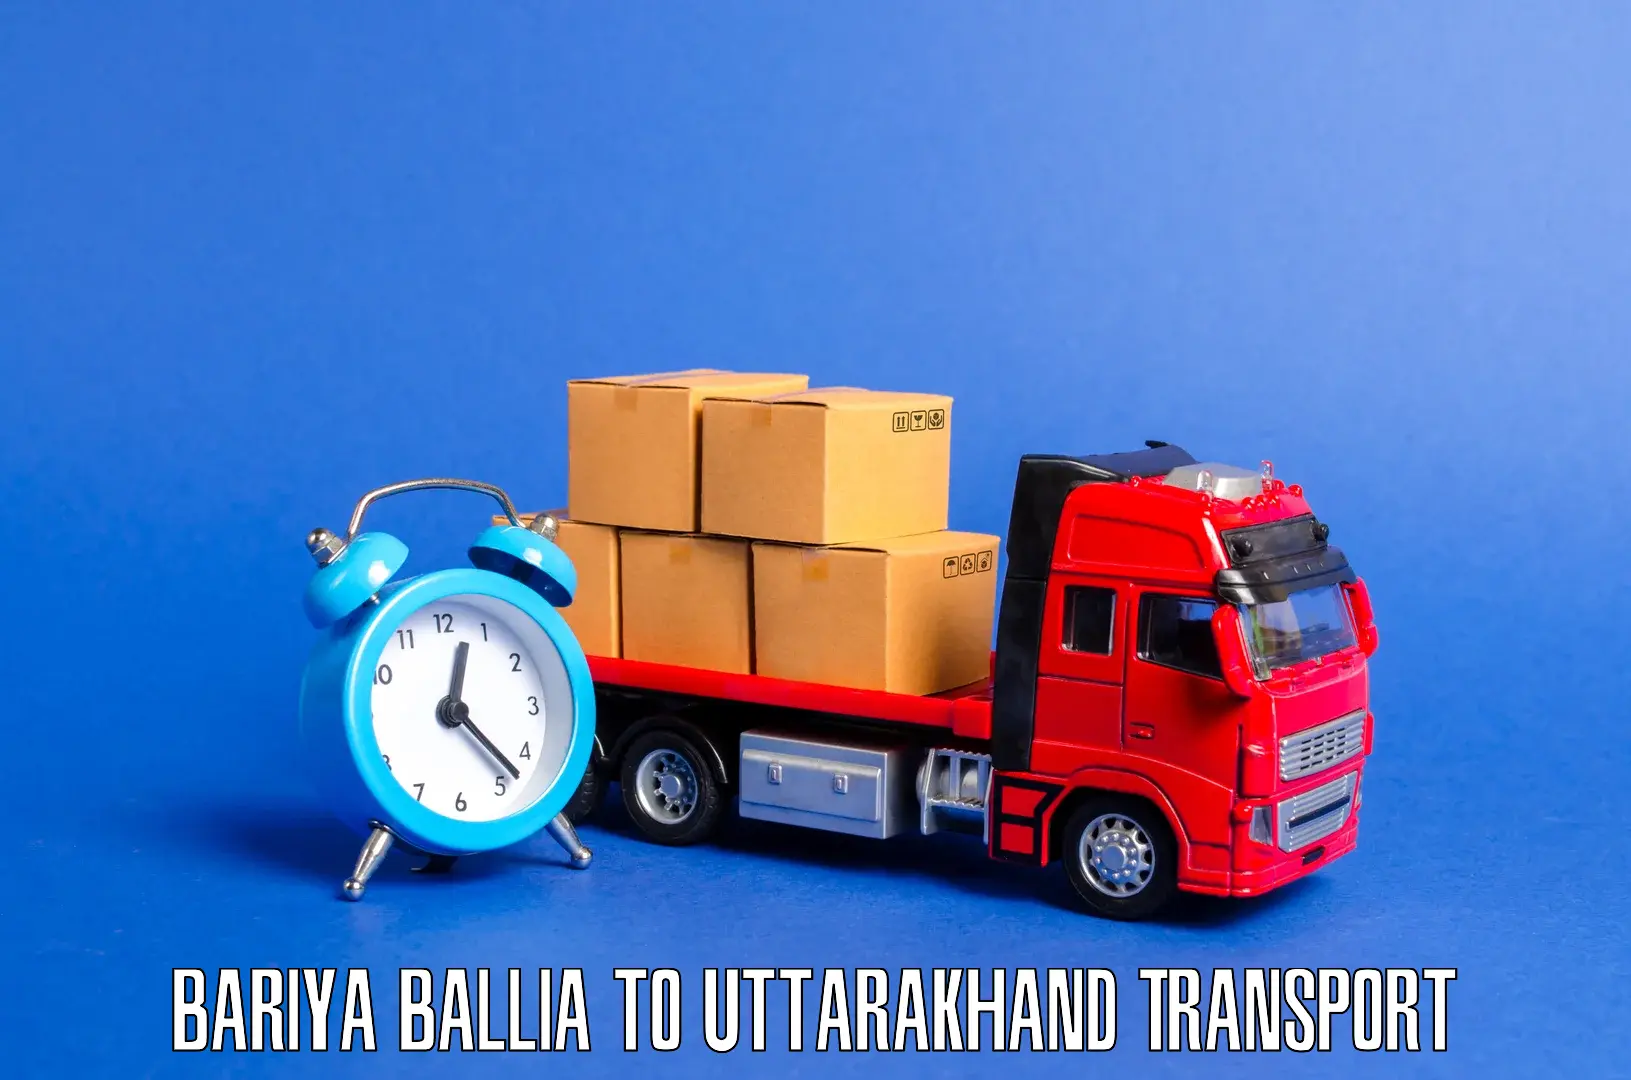 Transportation services Bariya Ballia to Haridwar